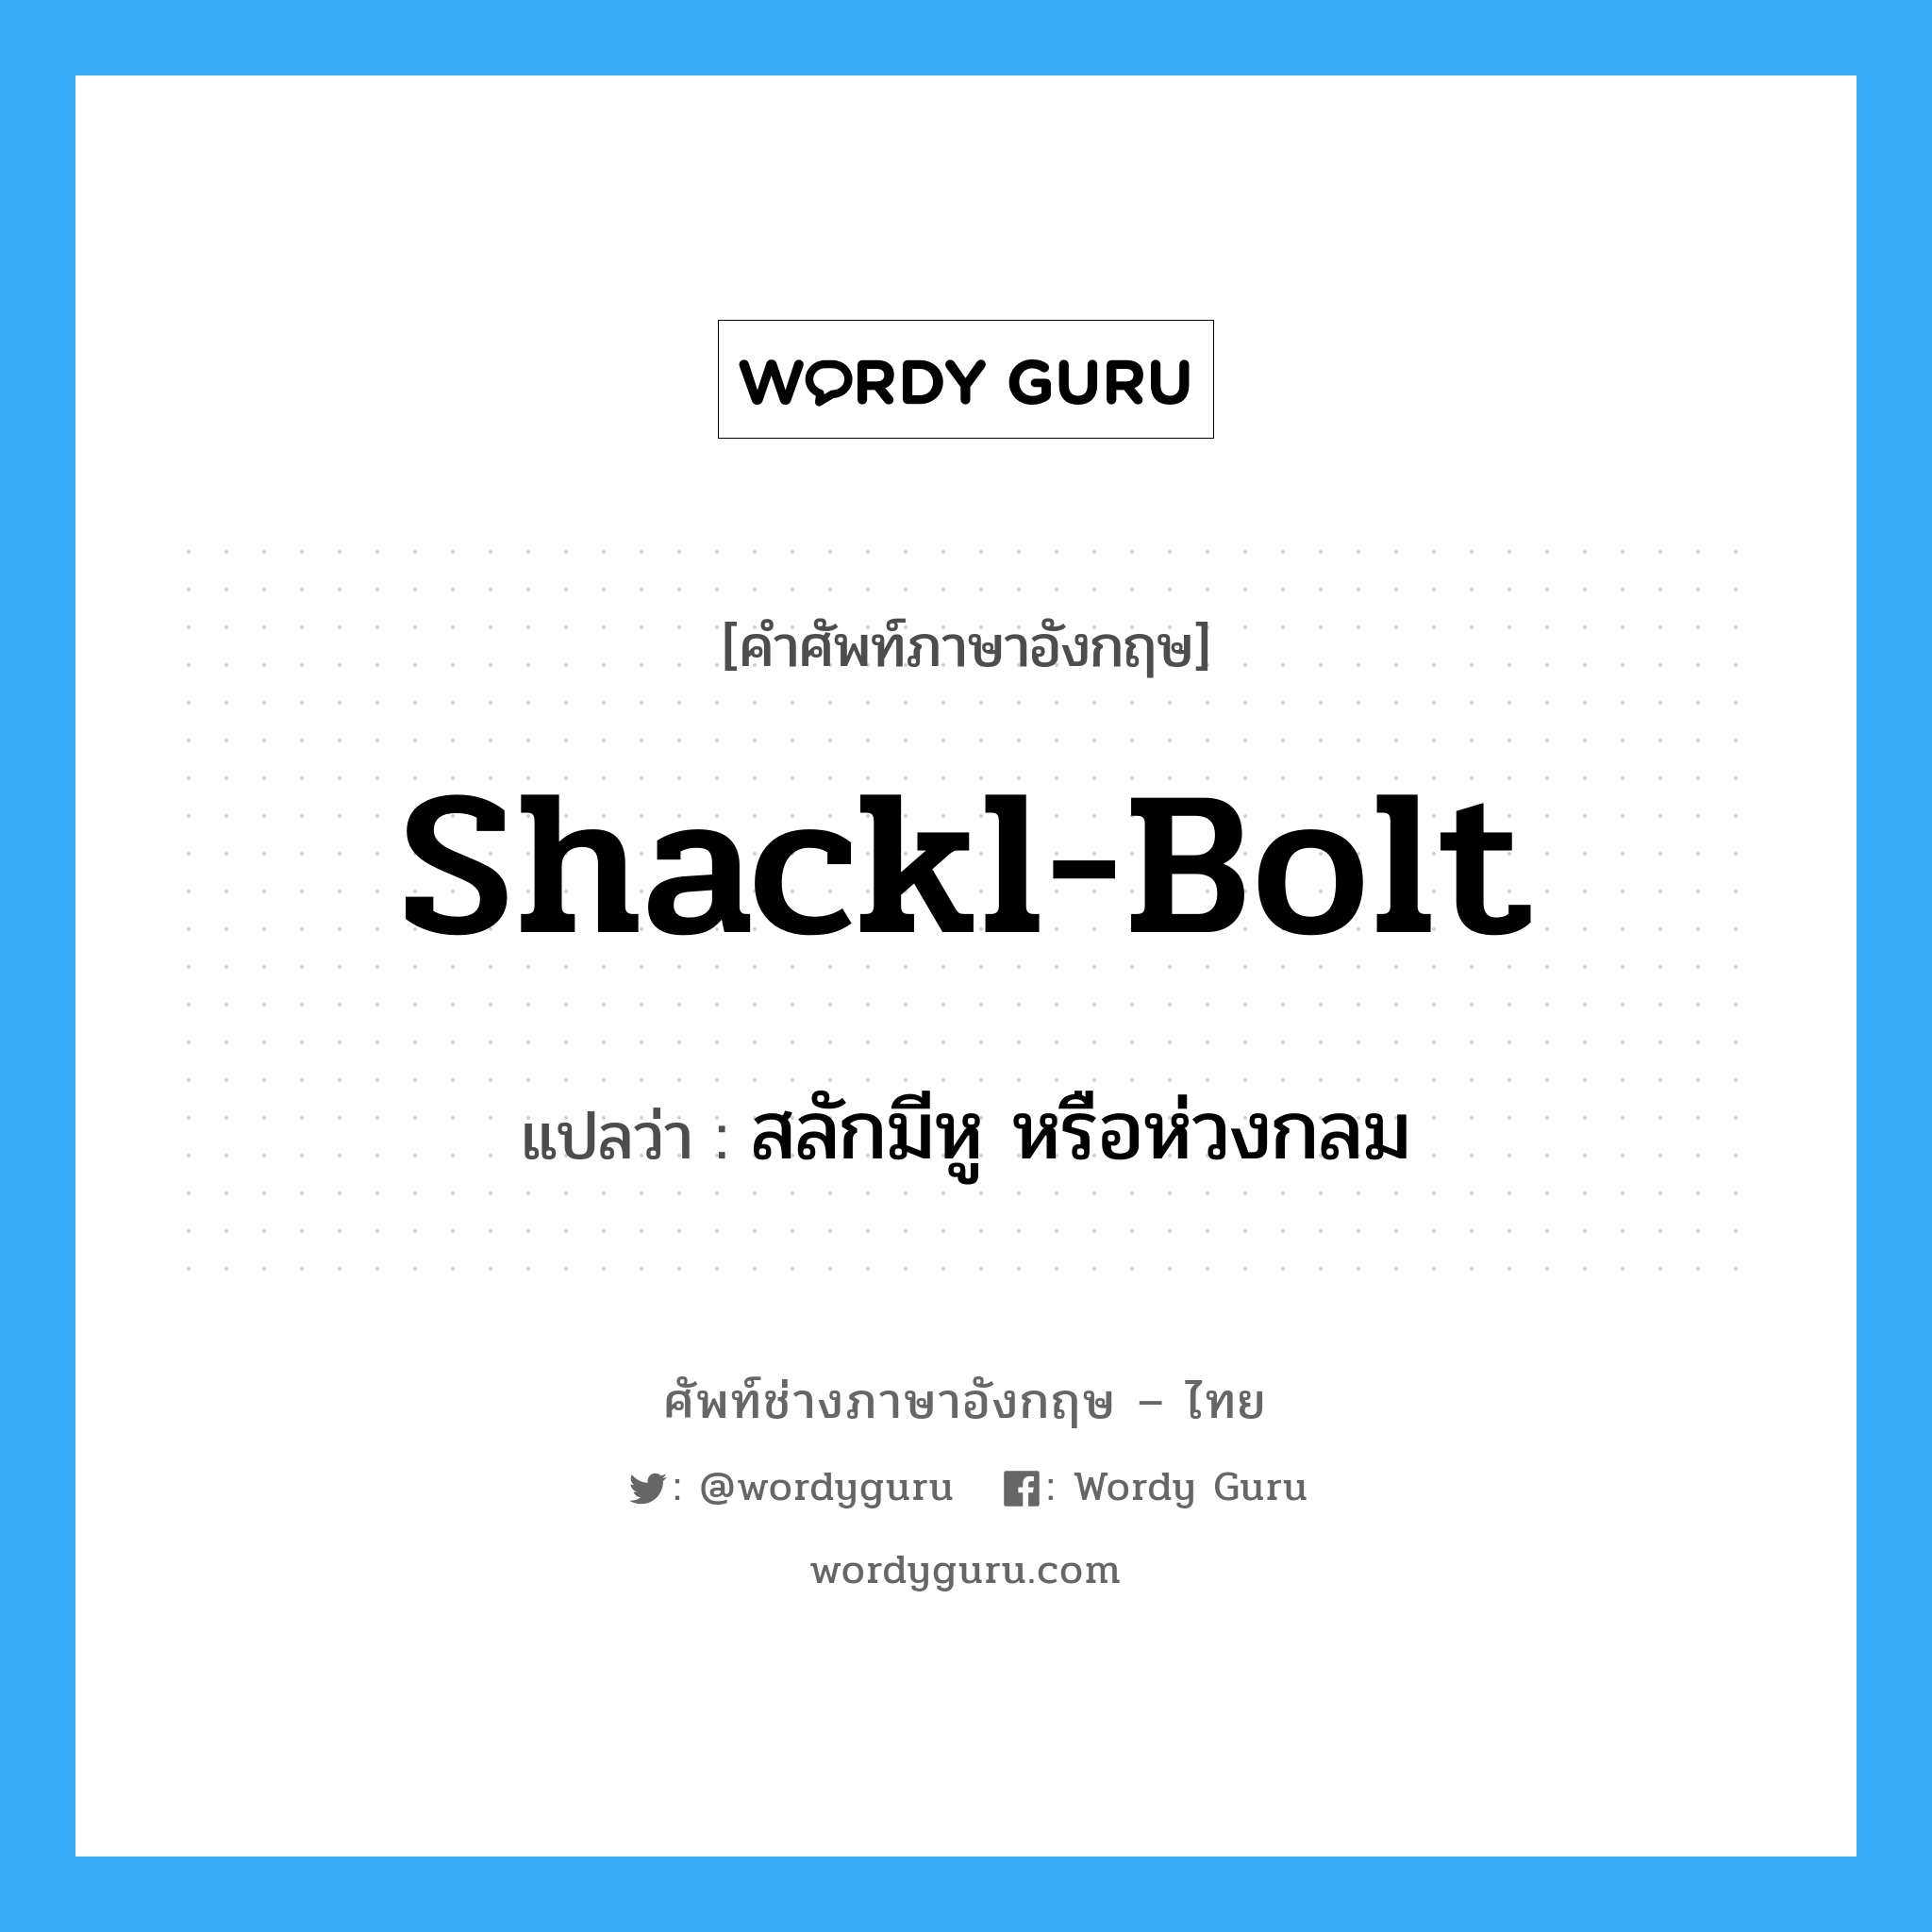 shackl-bolt แปลว่า?, คำศัพท์ช่างภาษาอังกฤษ - ไทย shackl-bolt คำศัพท์ภาษาอังกฤษ shackl-bolt แปลว่า สลักมีหู หรือห่วงกลม